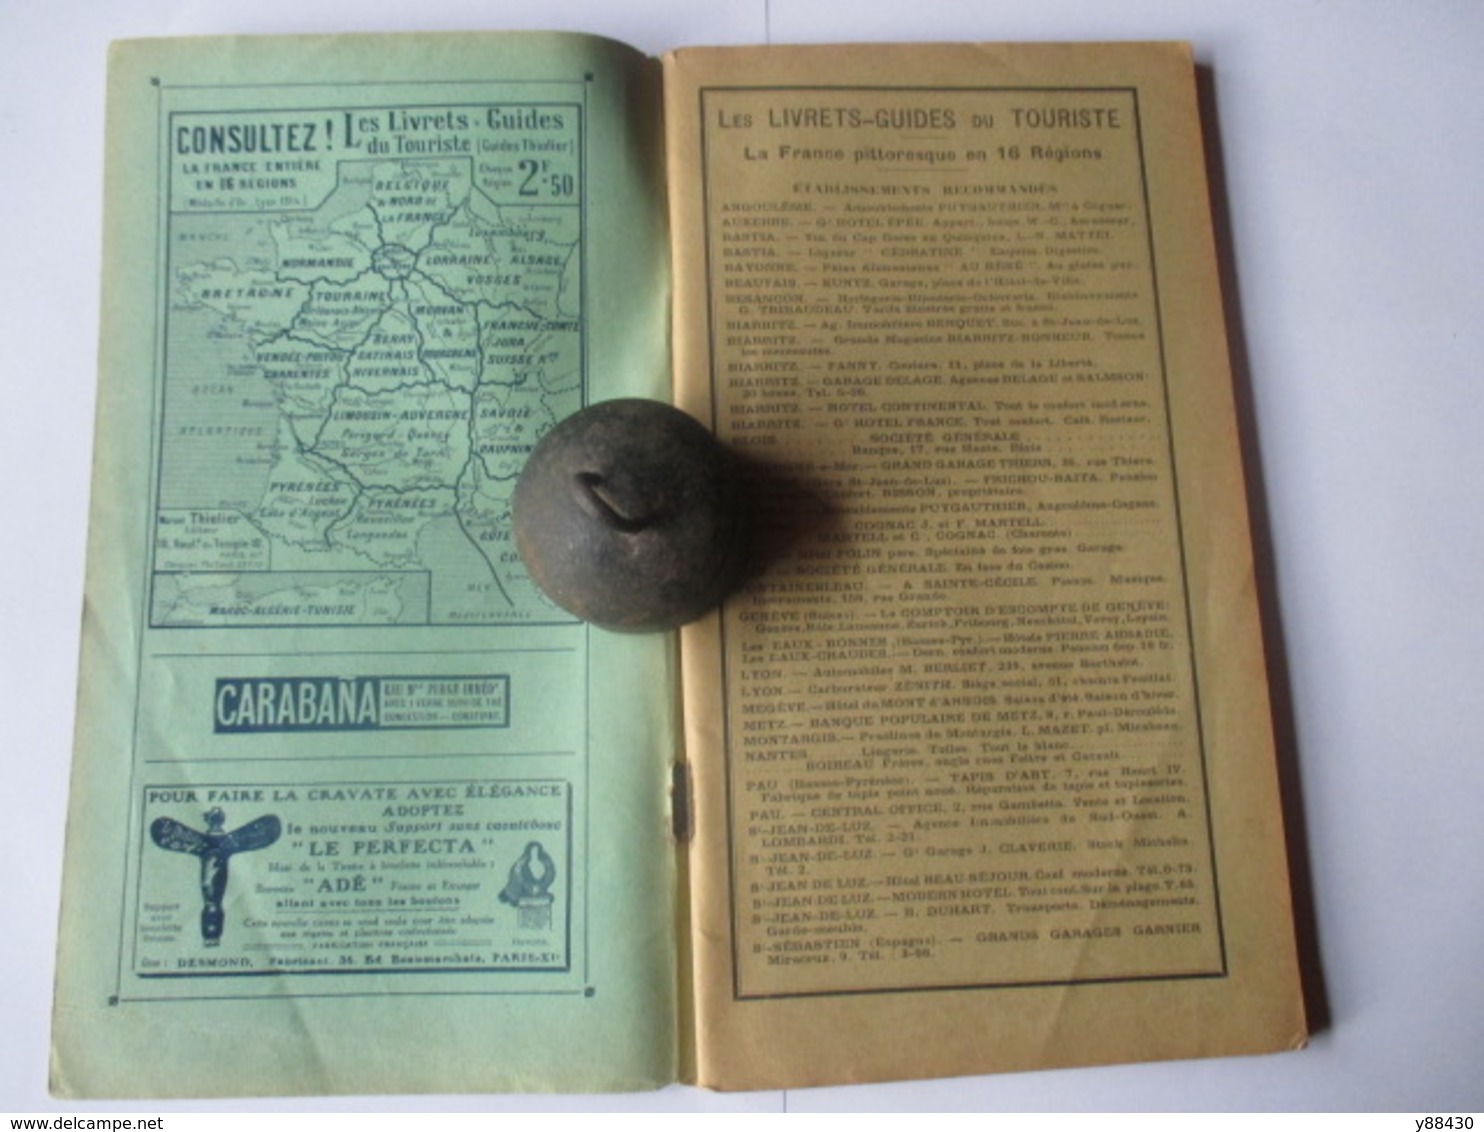 Livret Guides Du Touriste THIOLIER De 1923 - LUXEMBOURG / LORRAINE / ALSACE / VOSGES  - 124 Pages - 25 Photos - Cuadernillos Turísticos